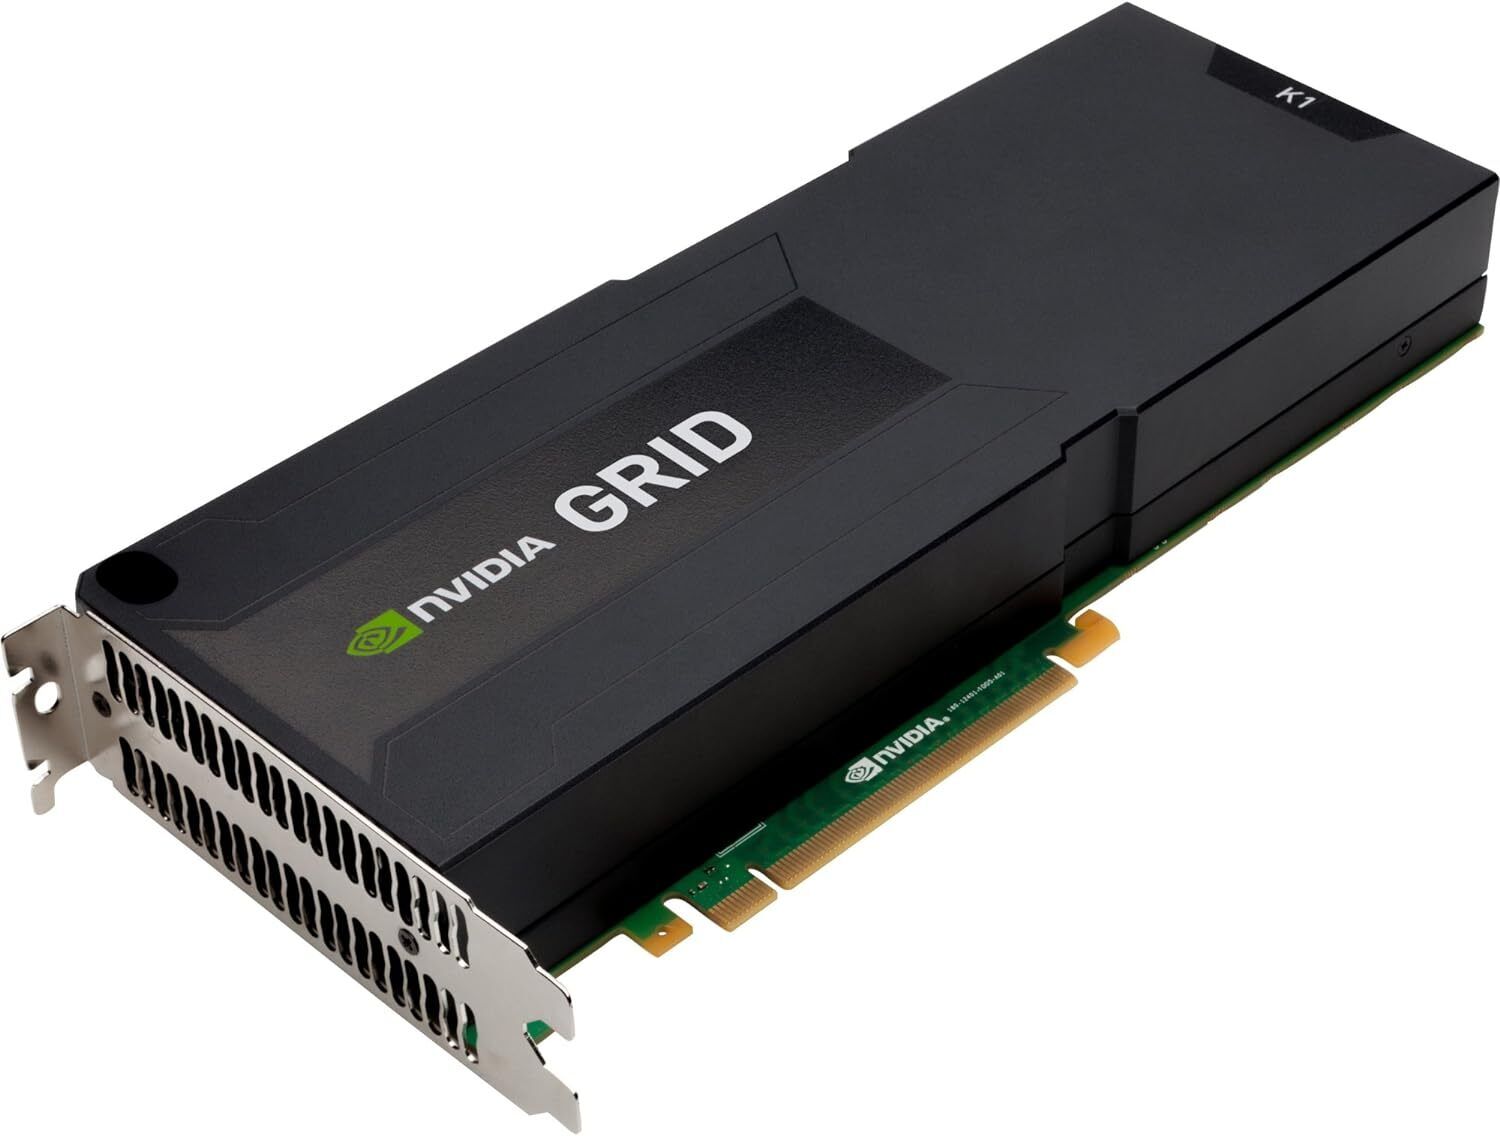  New Sealed HP NVIDIA GRID K1 16 GB 4 GPU PCI-E 3.0x16 Graphics Card Accelerator